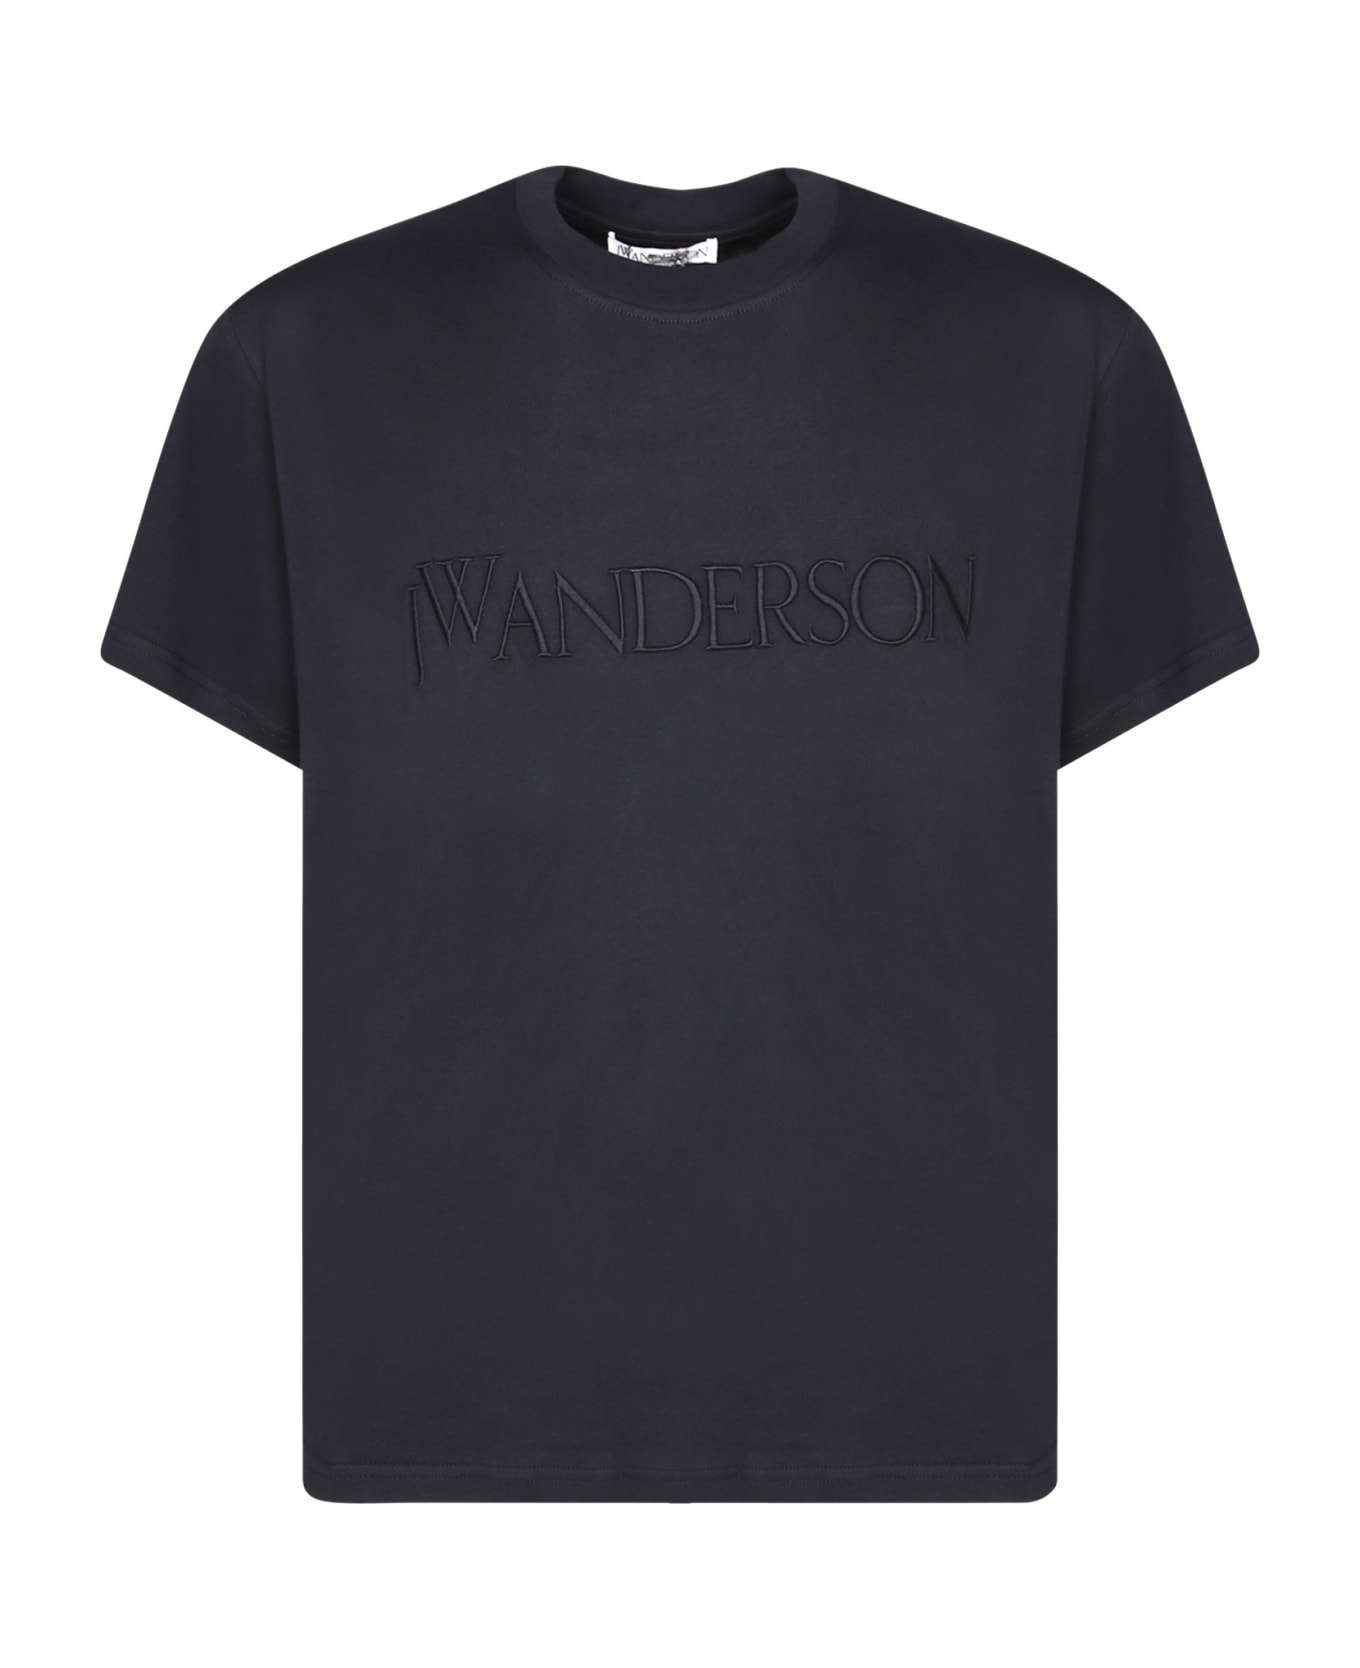 J.W. Anderson Logo Black T-shirt - Black